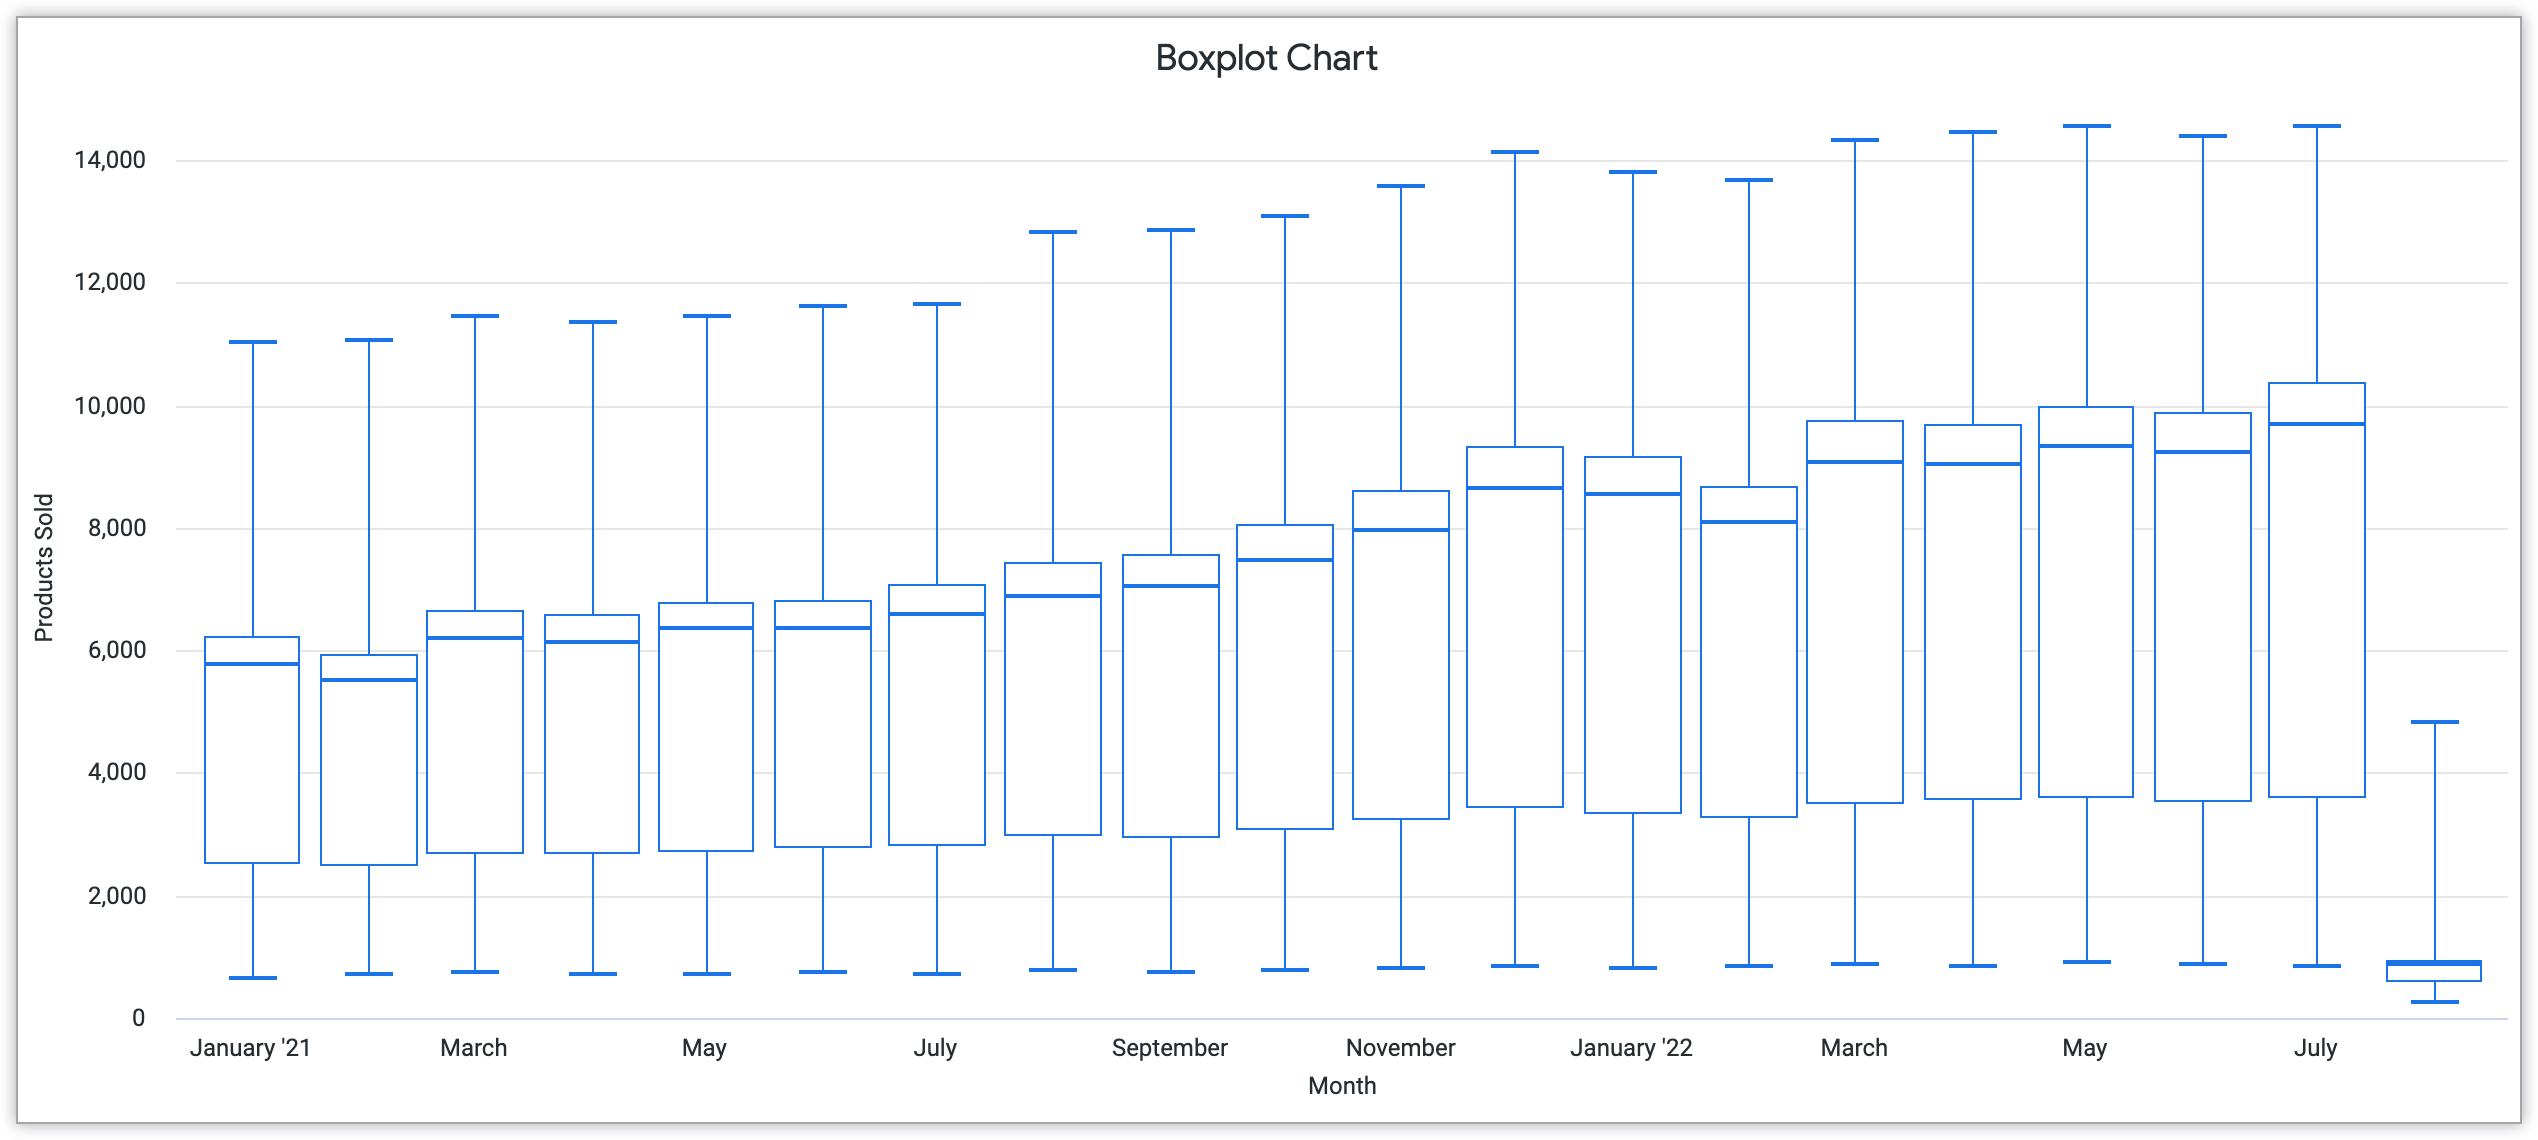 Gráfico Boxplot mostrando o mês no eixo X e os produtos vendidos no eixo Y.